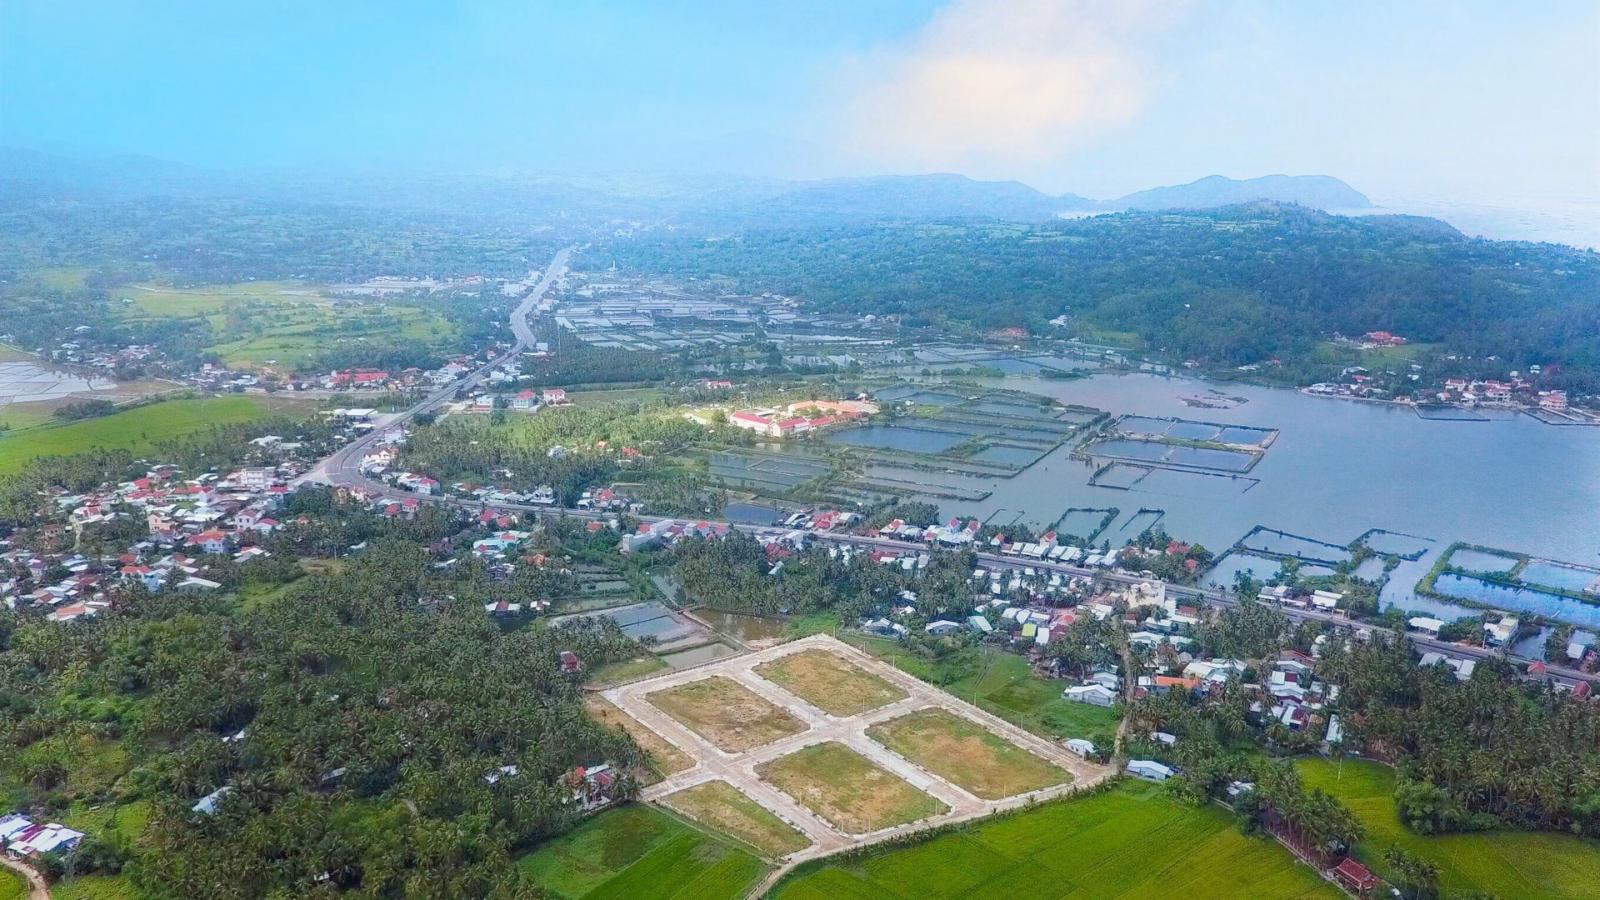 Đất nền đầu tư siêu lợi nhuận-Cùng dự án KDC Đồng Mặn-LH ngay 0905.272.789